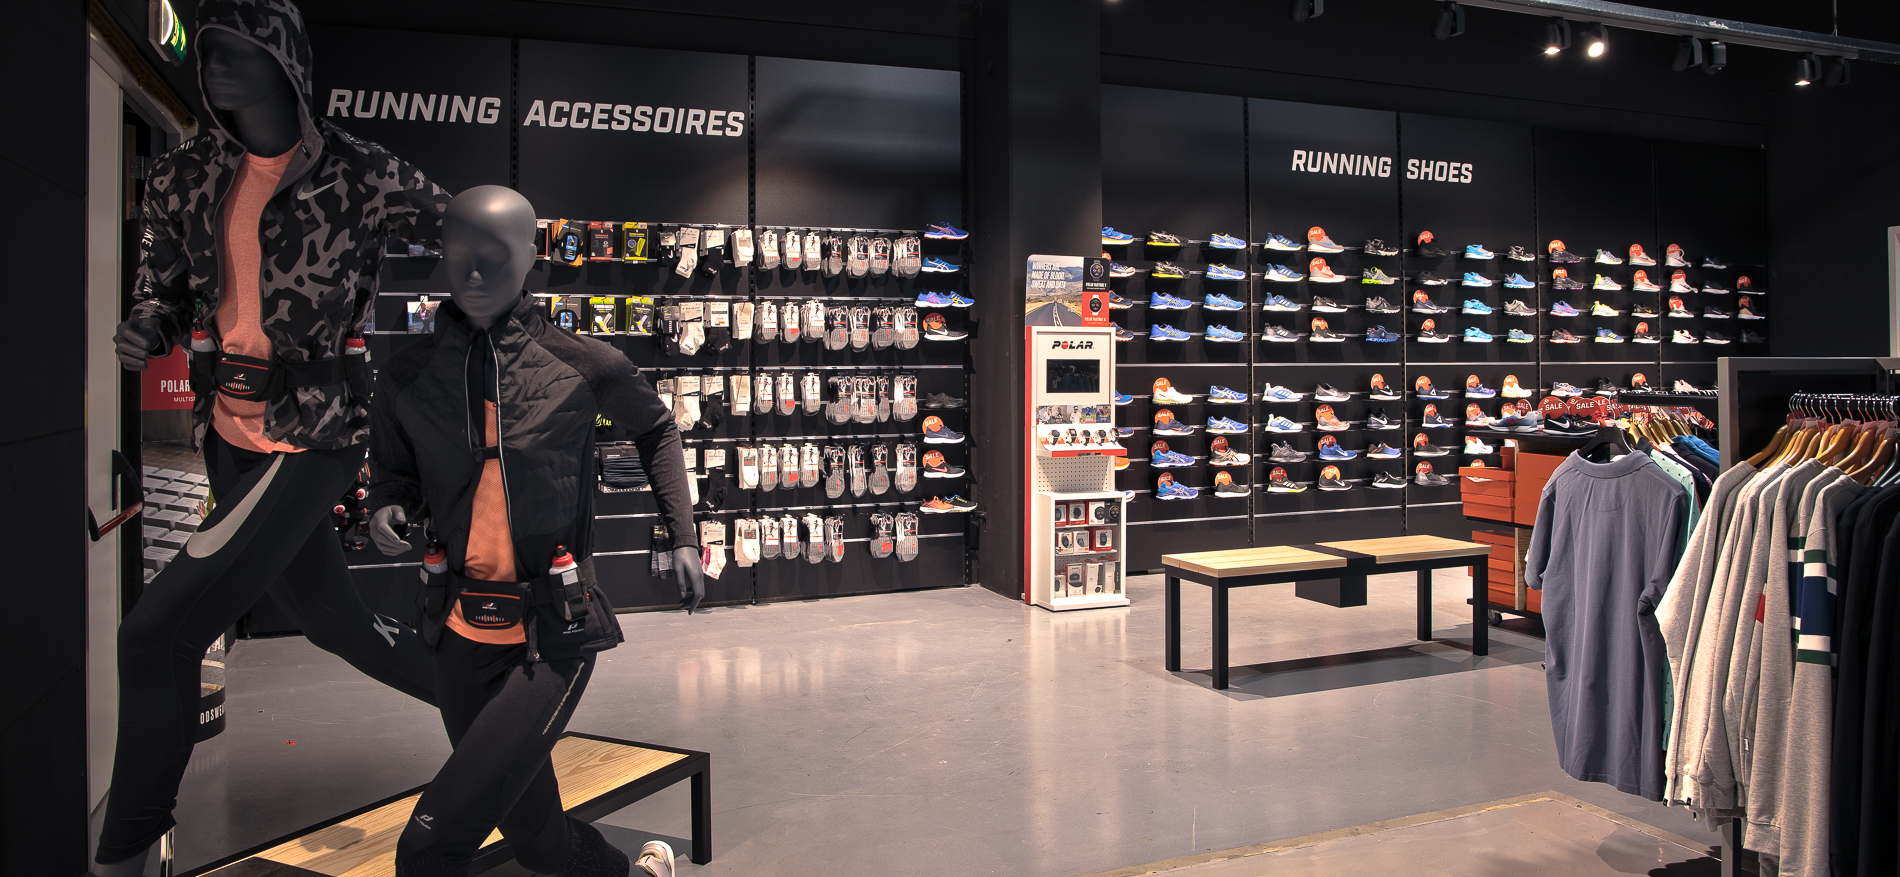 Daka Sport Apeldoorn | Winkelinrichting retailketen - Sport